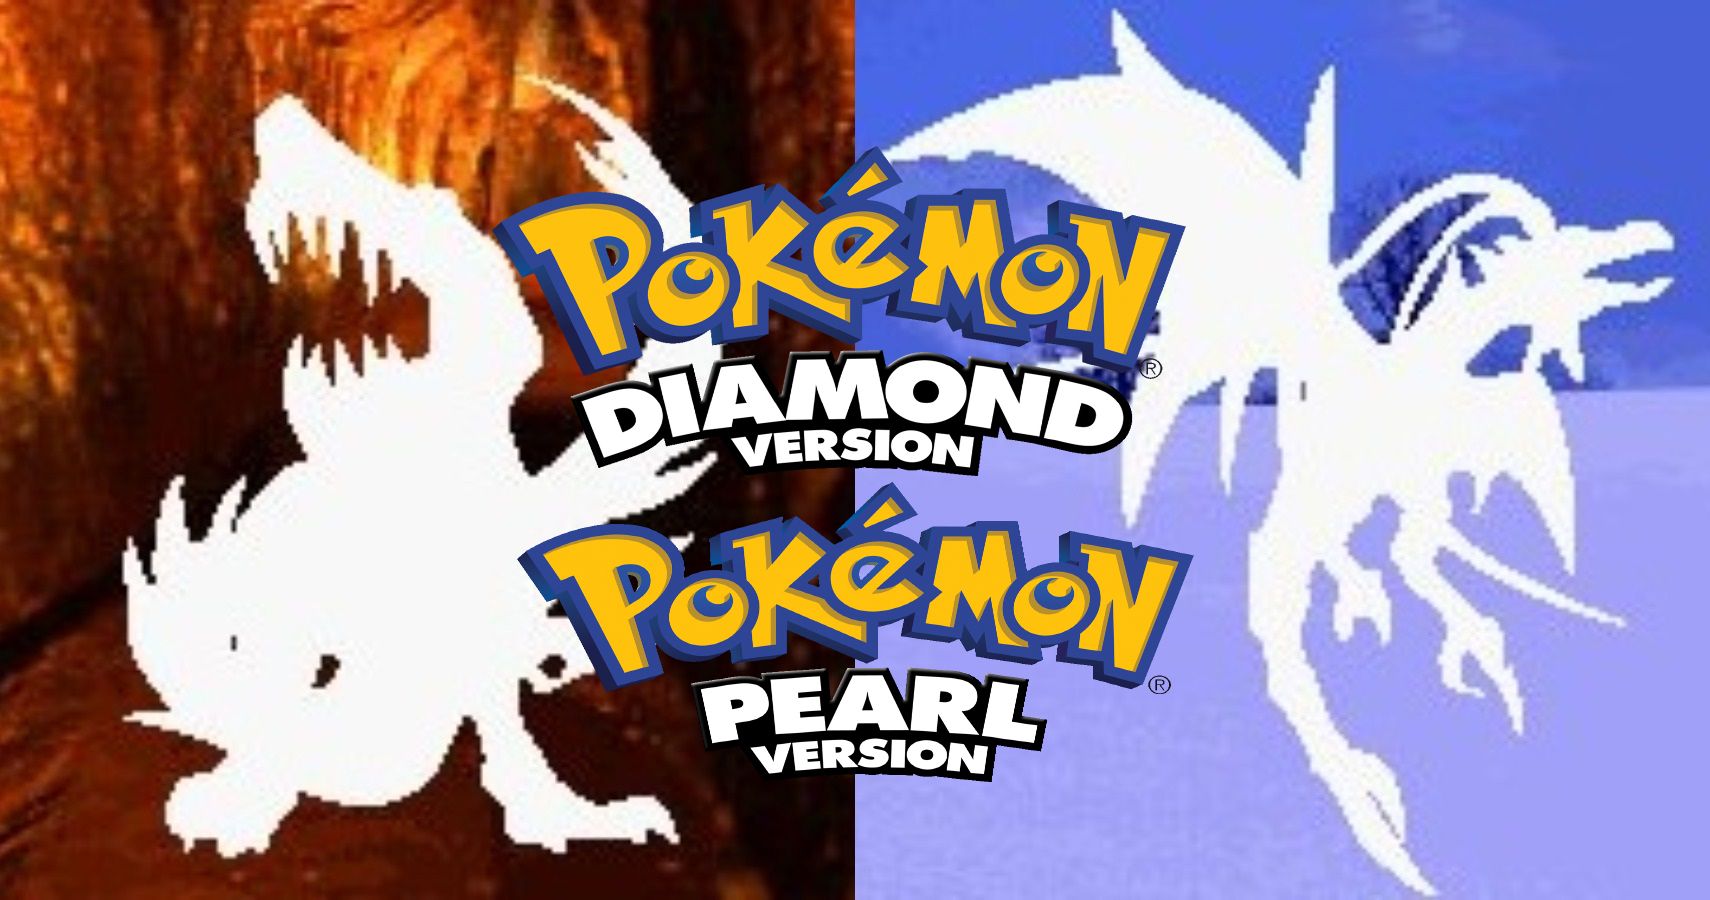 Pokemon legendary pokemon diamond pearl